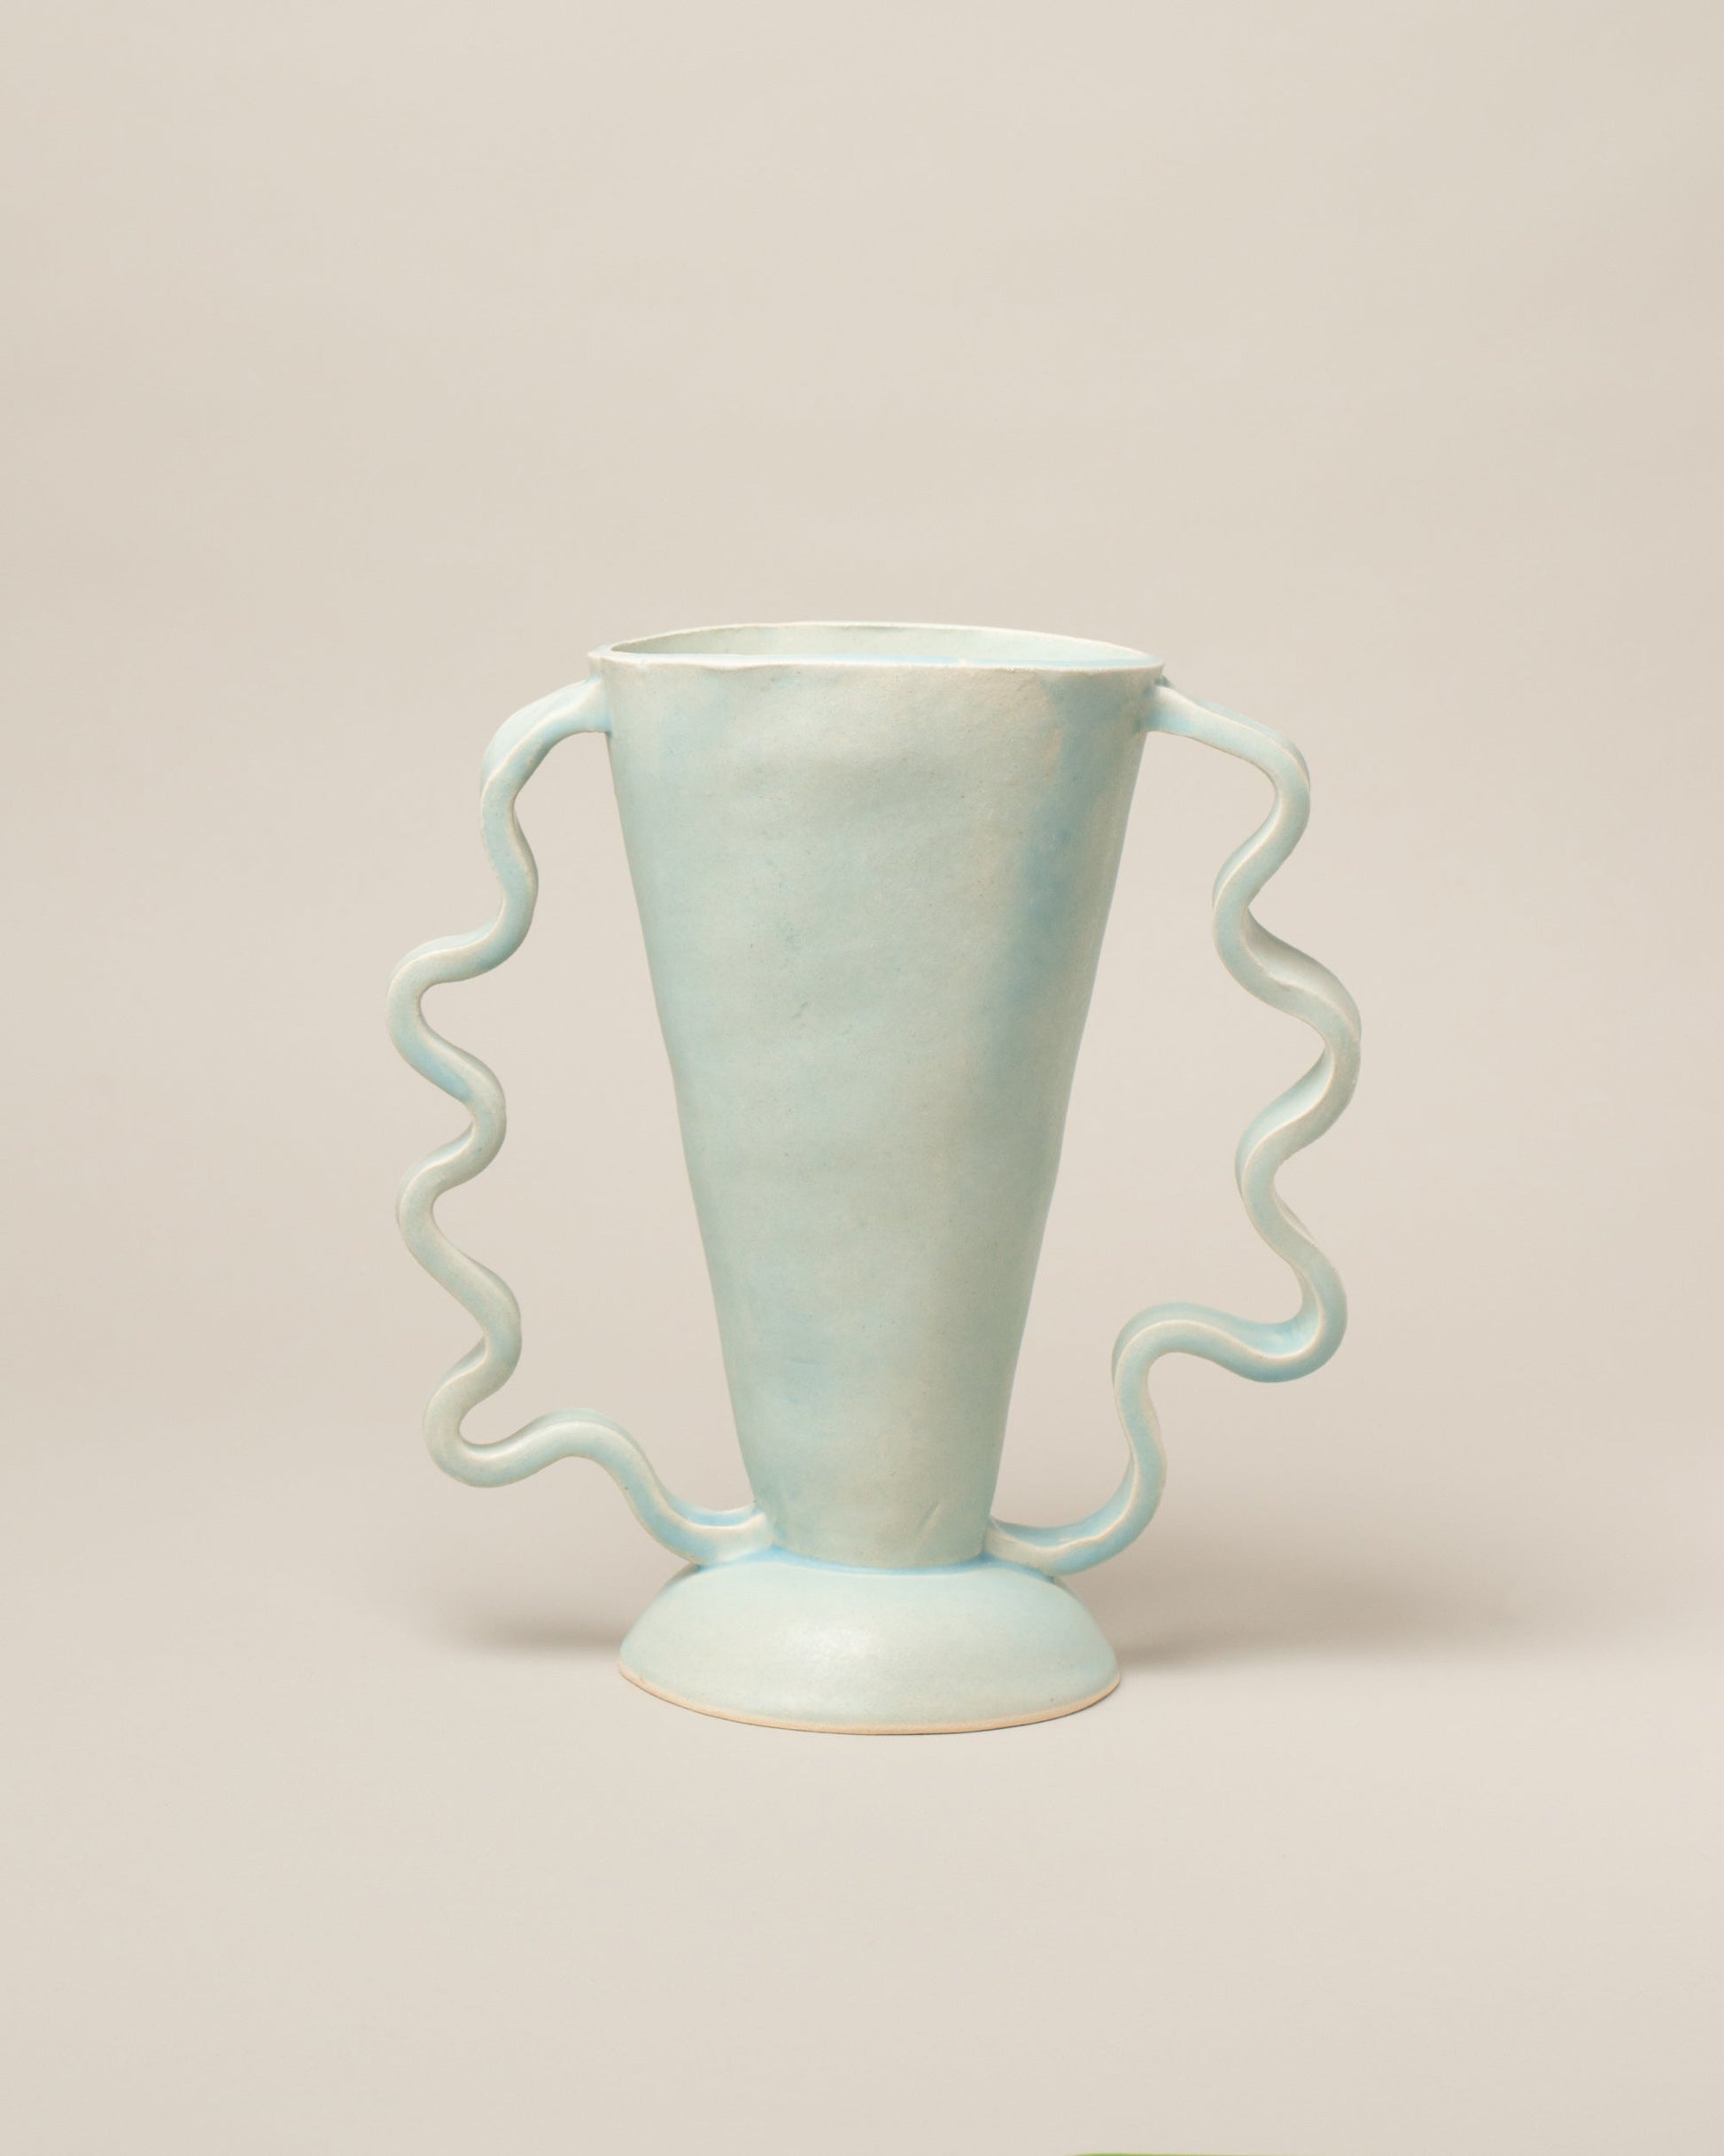  Stretch Vase on light color background.